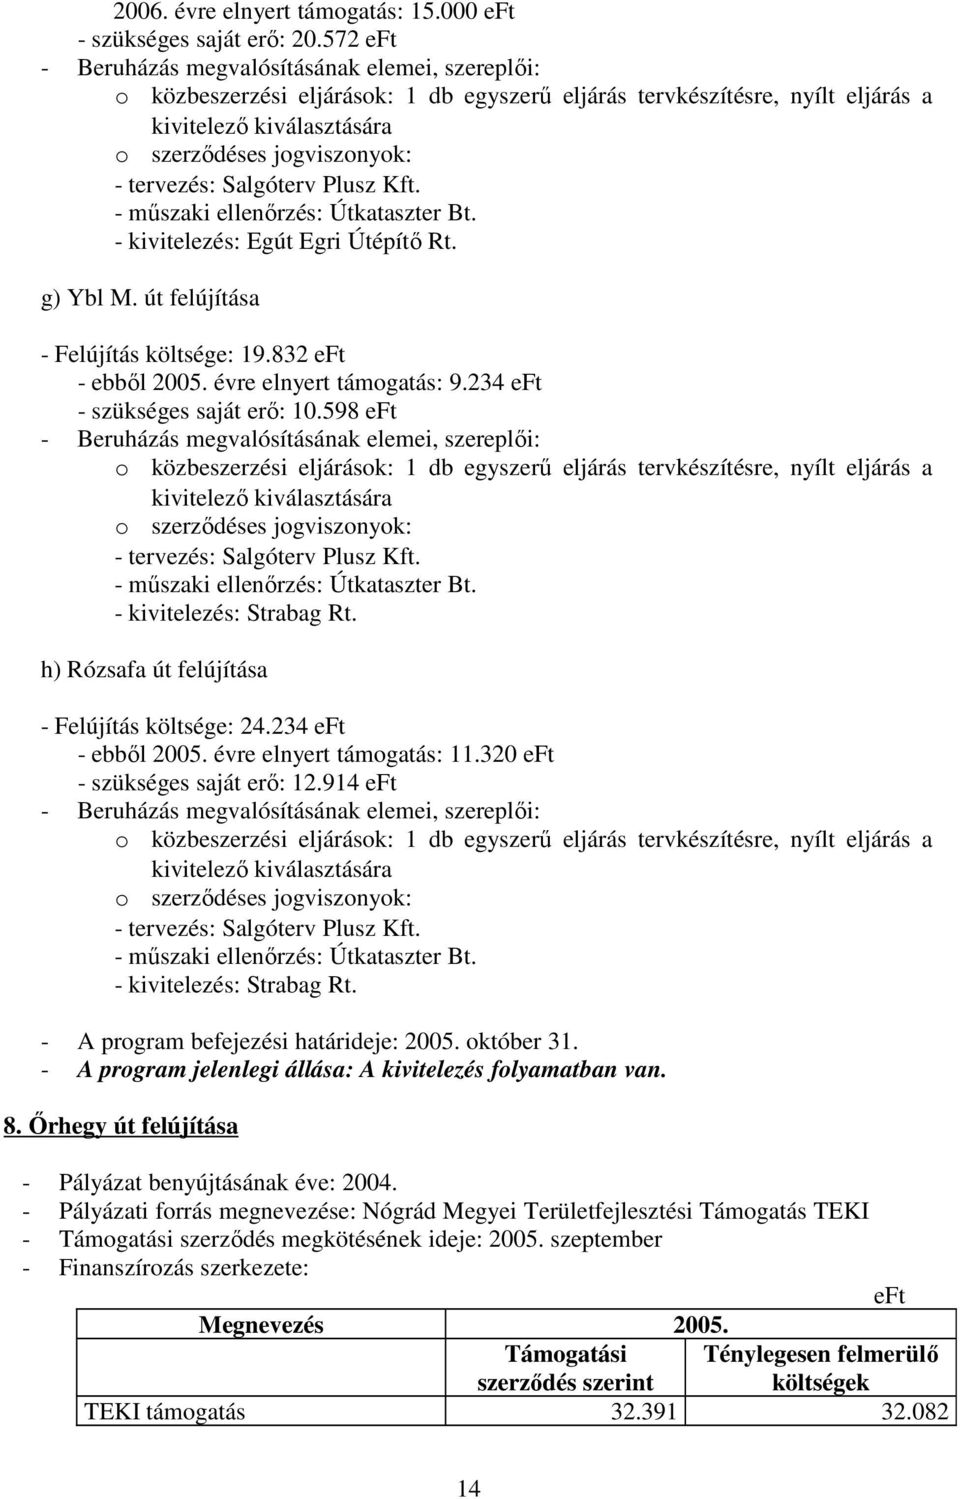 - kivitelezés: Egút Egri Útépítı Rt. g) Ybl M. út felújítása - Felújítás költsége: 19.832 - ebbıl 2005. évre elnyert támogatás: 9.234 - szükséges saját erı: 10.